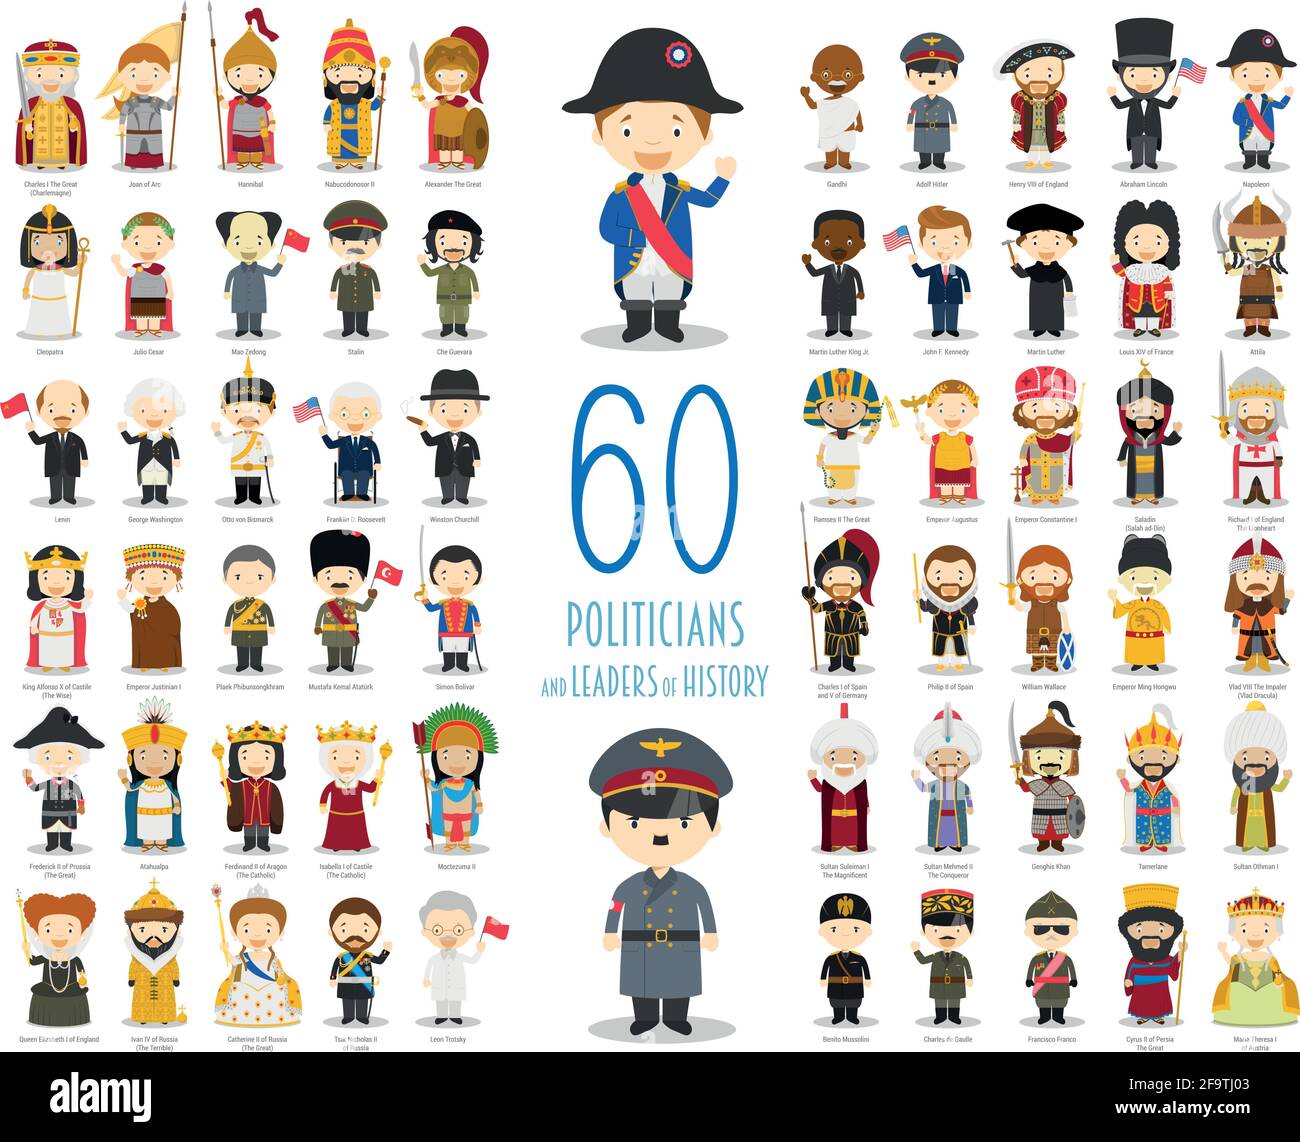 Kids Vector Characters Collection: Insieme di 60 politici e leader di storia in stile cartoon. Illustrazione Vettoriale